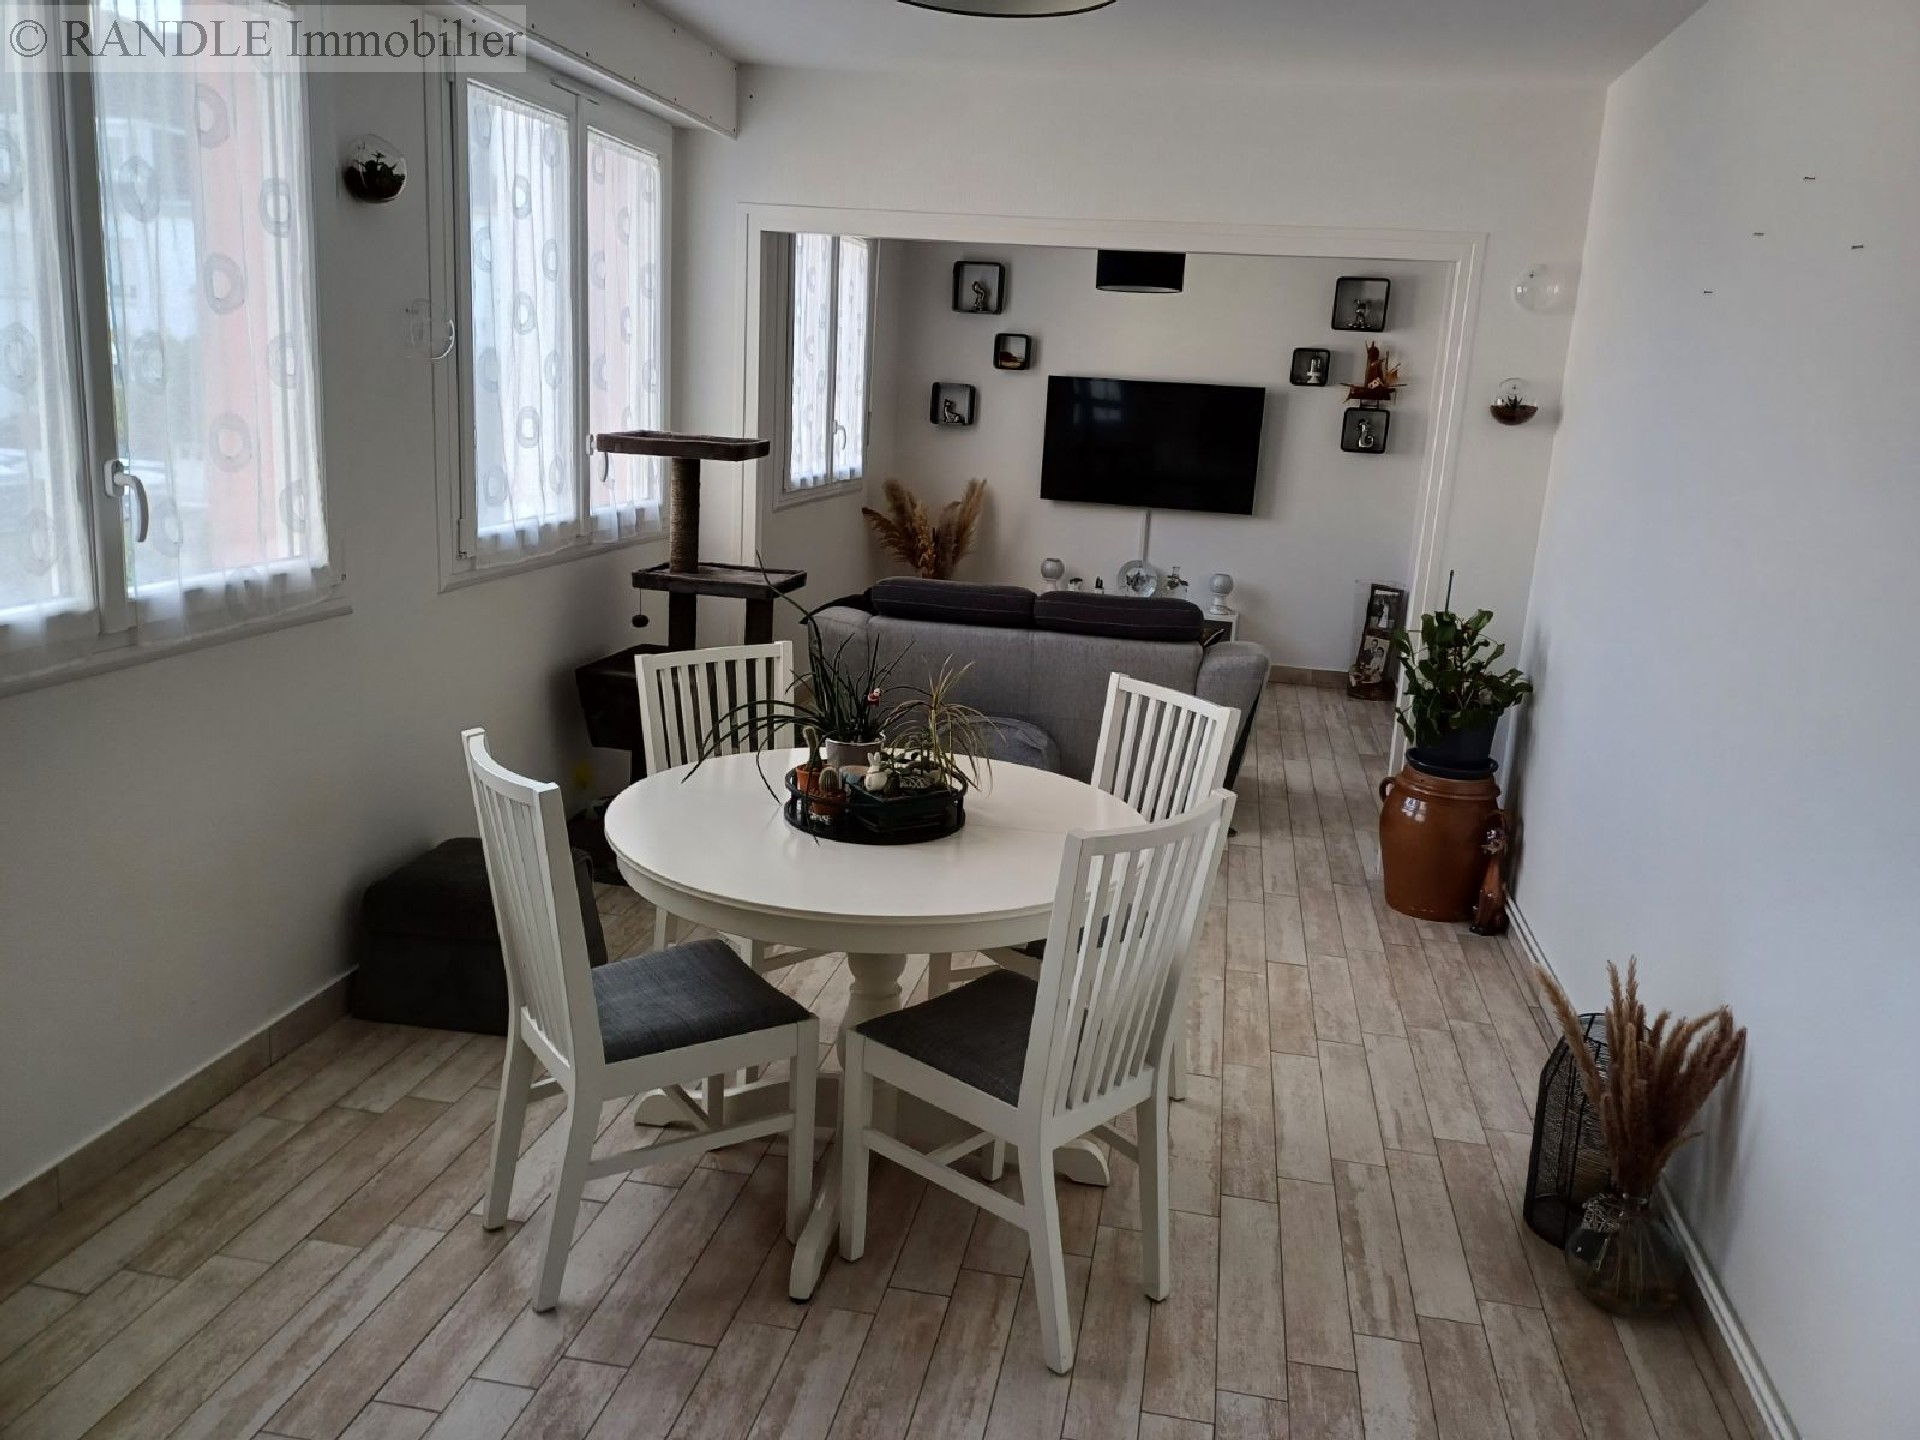 Vente appartement - LORIENT 74 m², 4 pièces